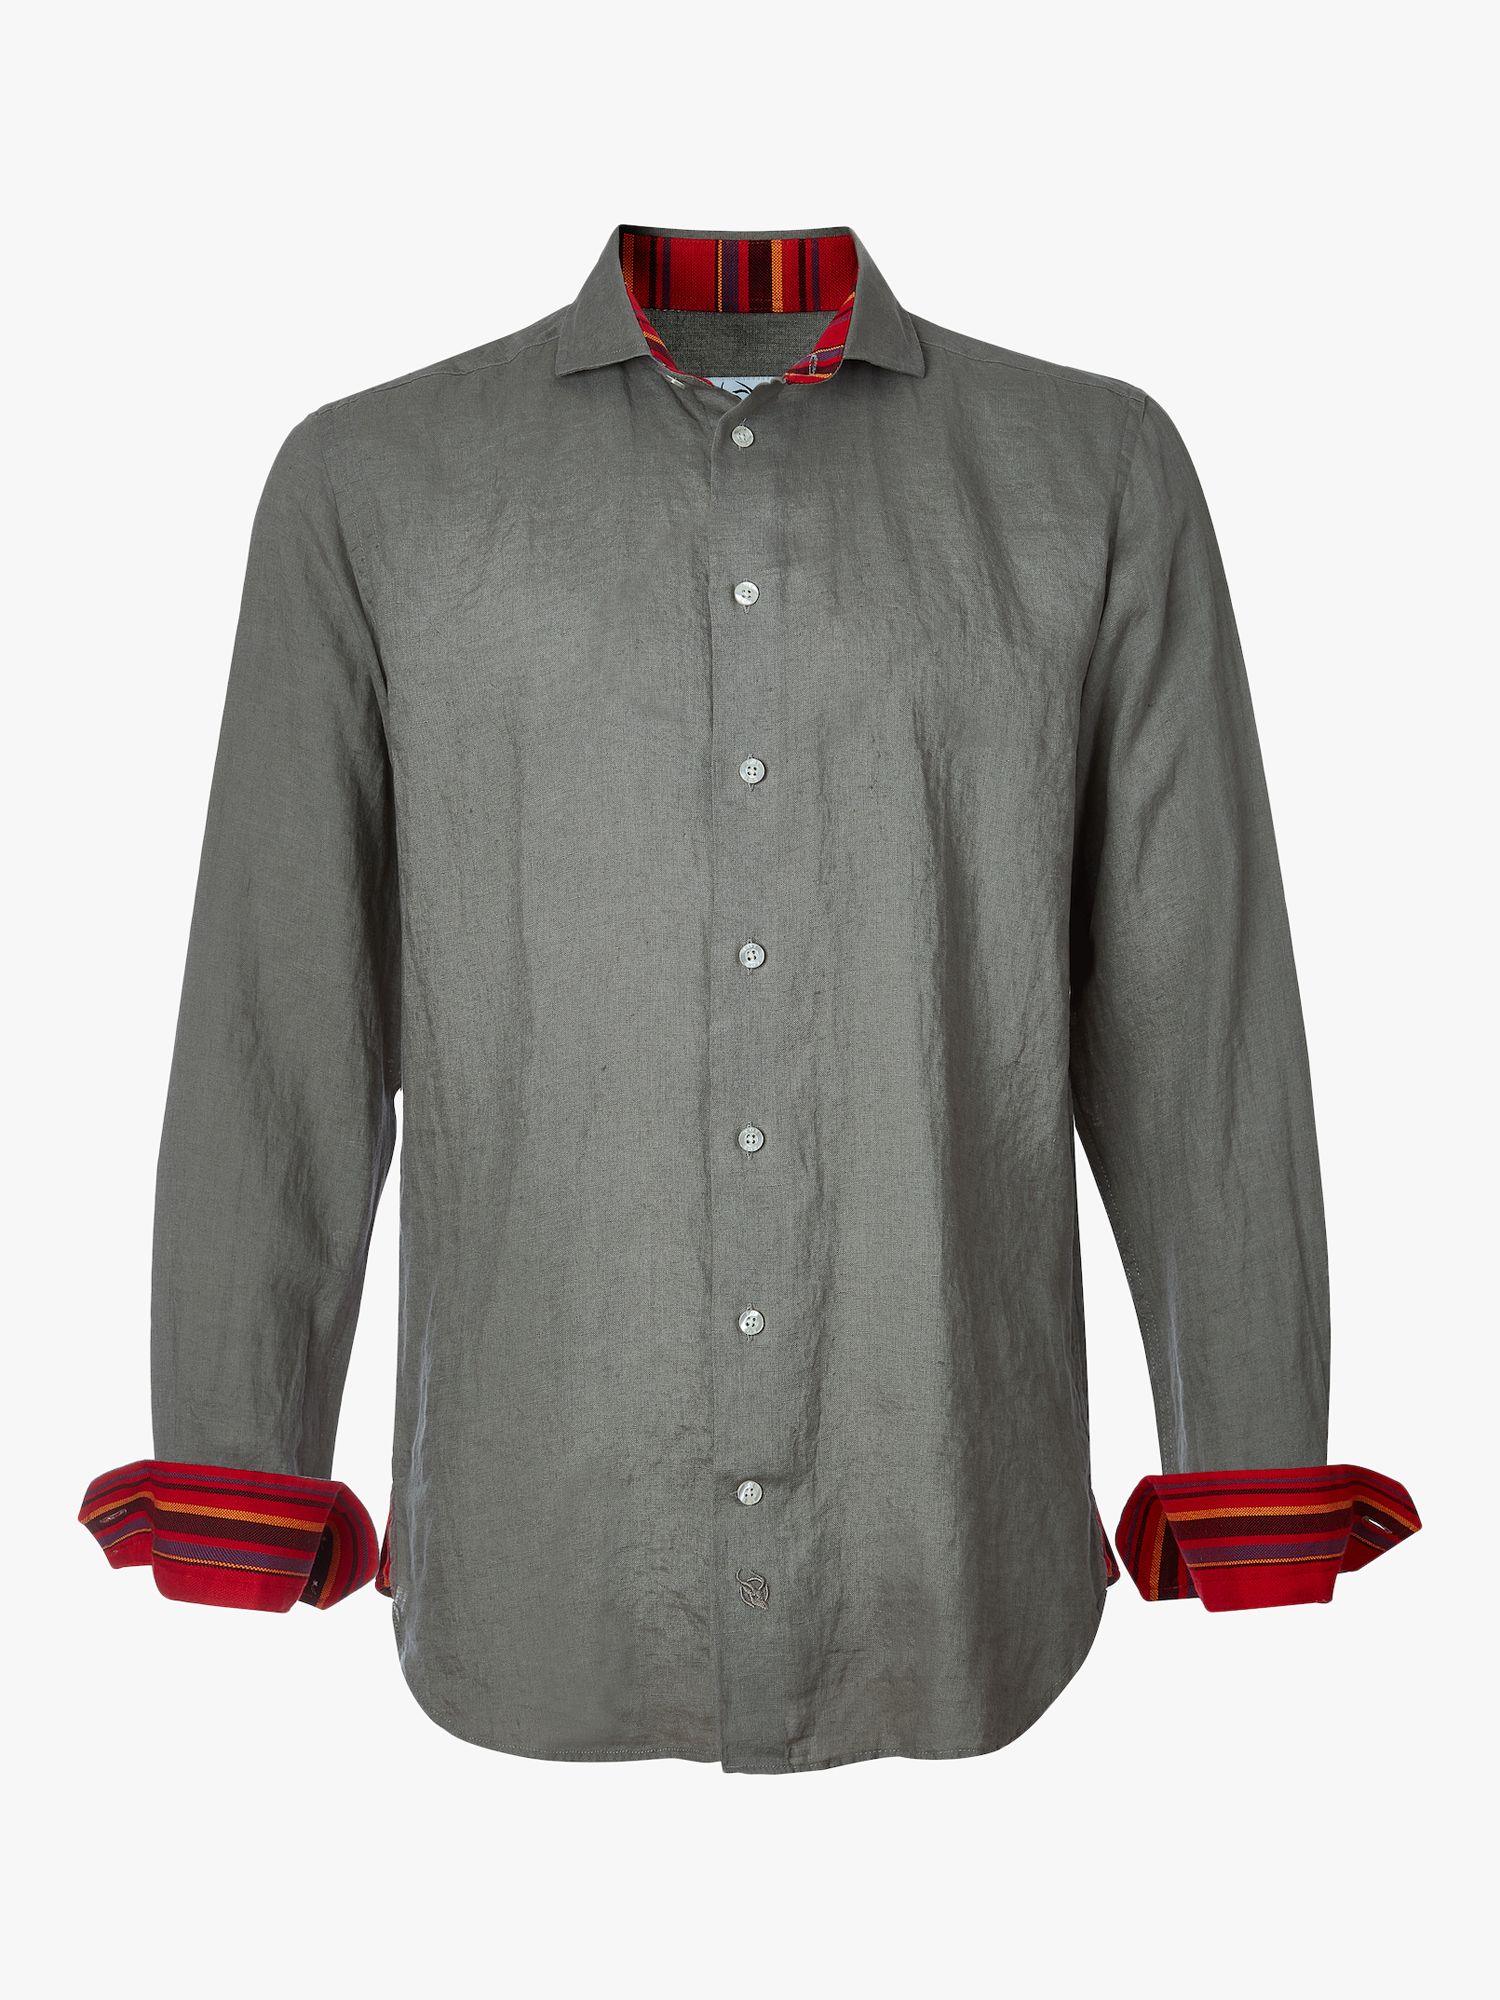 KOY Linen Shirt, Khaki/Olive, XS